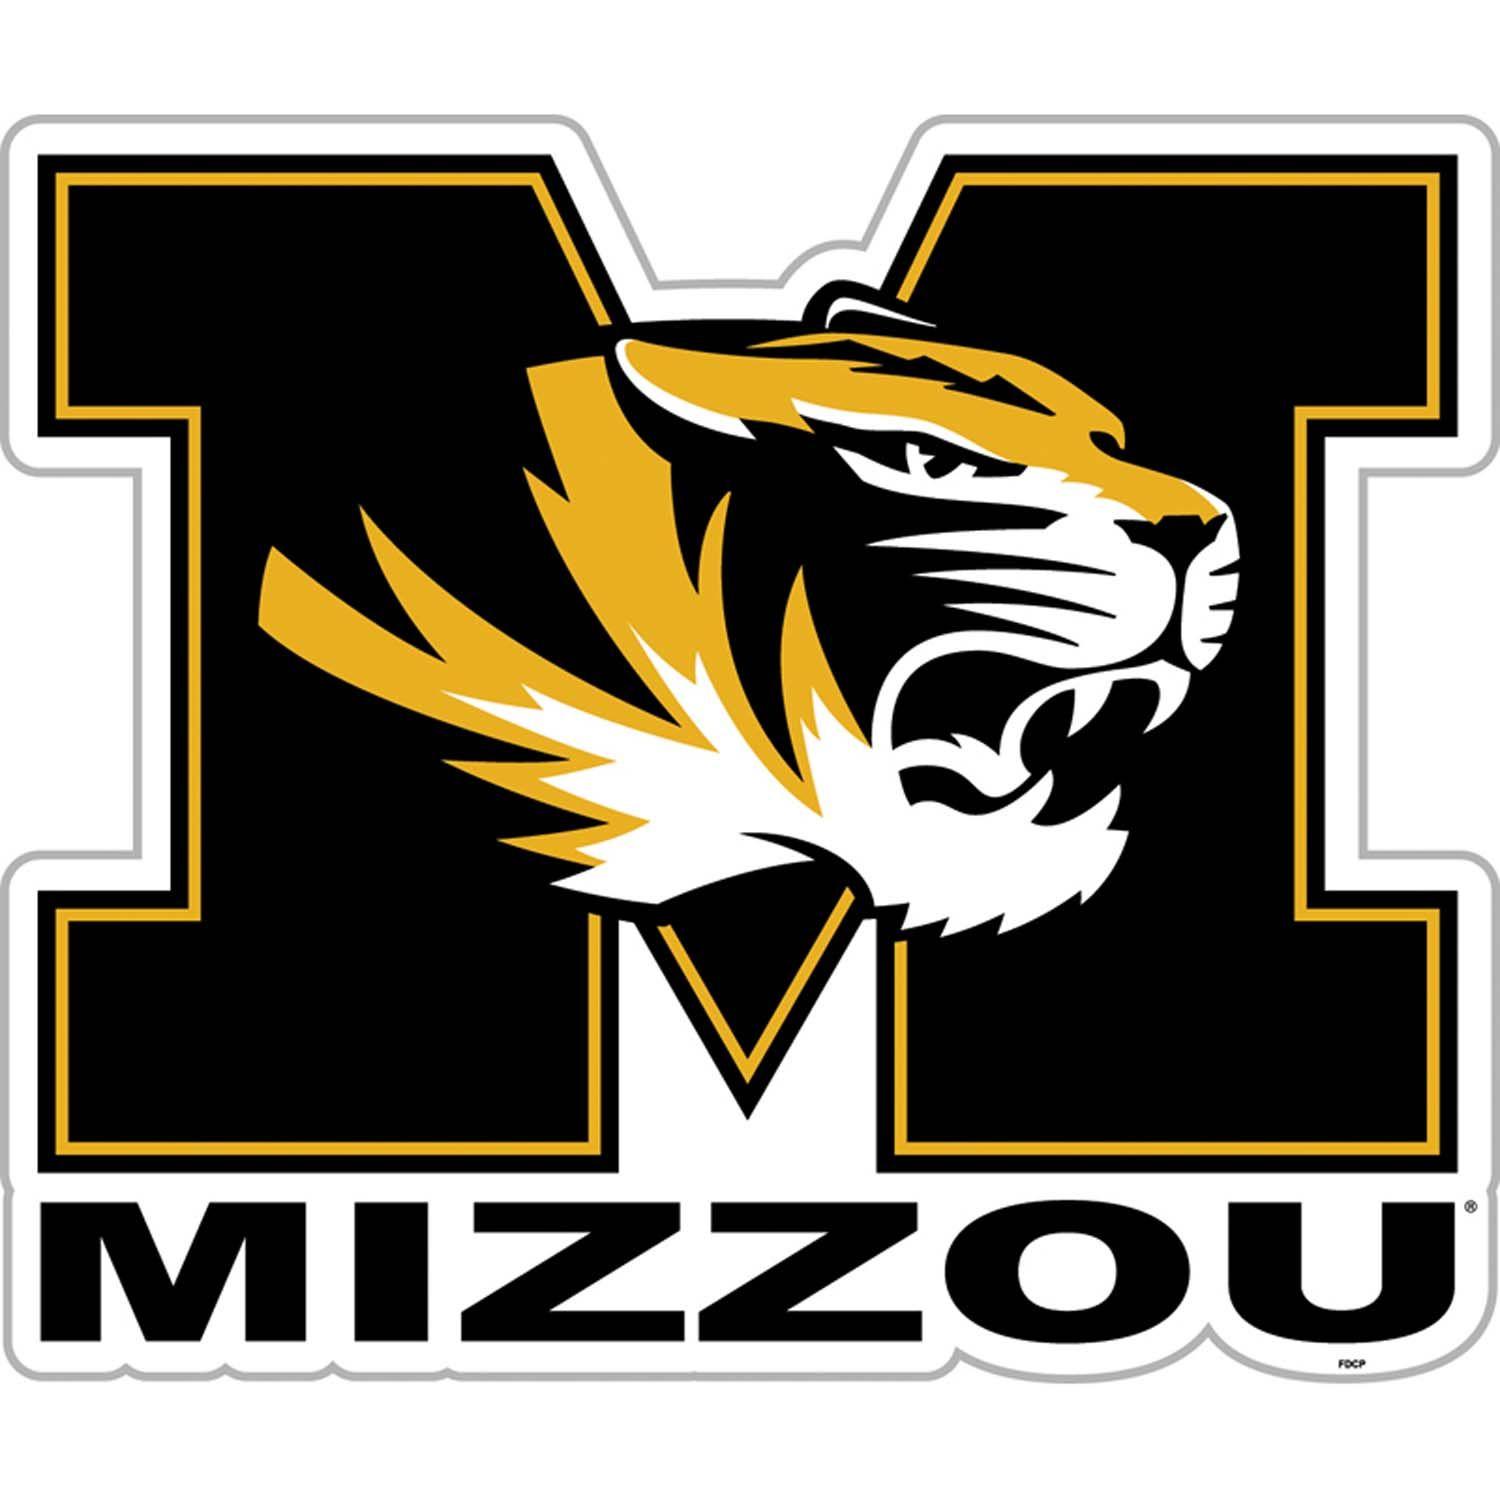 Mizzou Basketball Logo - University of Missouri (Mizzou)- Tigers | Thing that make me happy ...